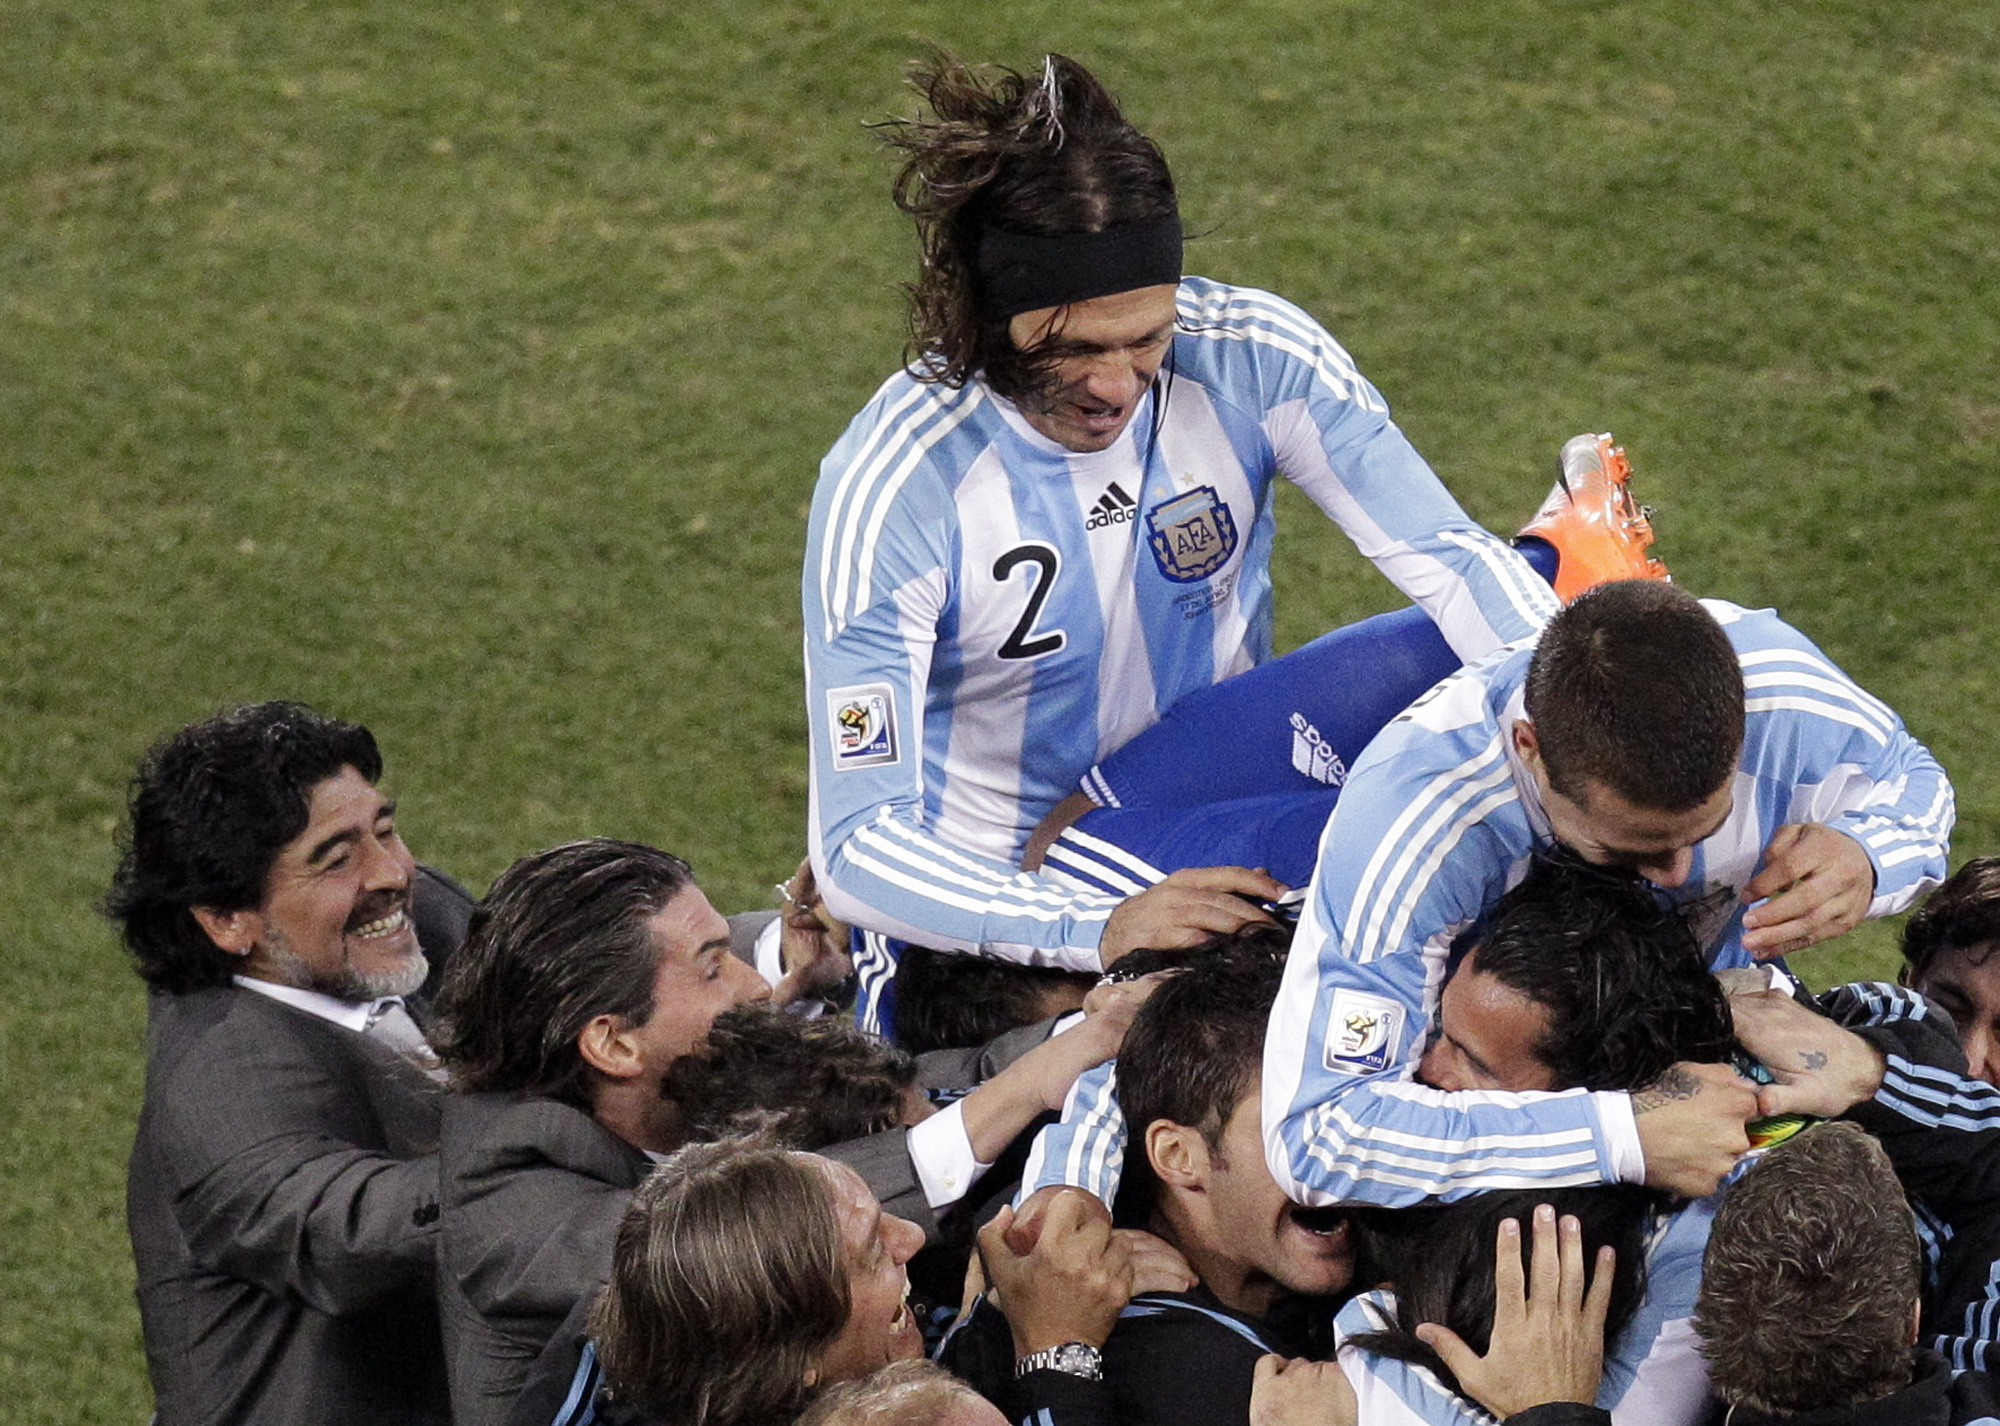 Vild glädje bland argentinarna.